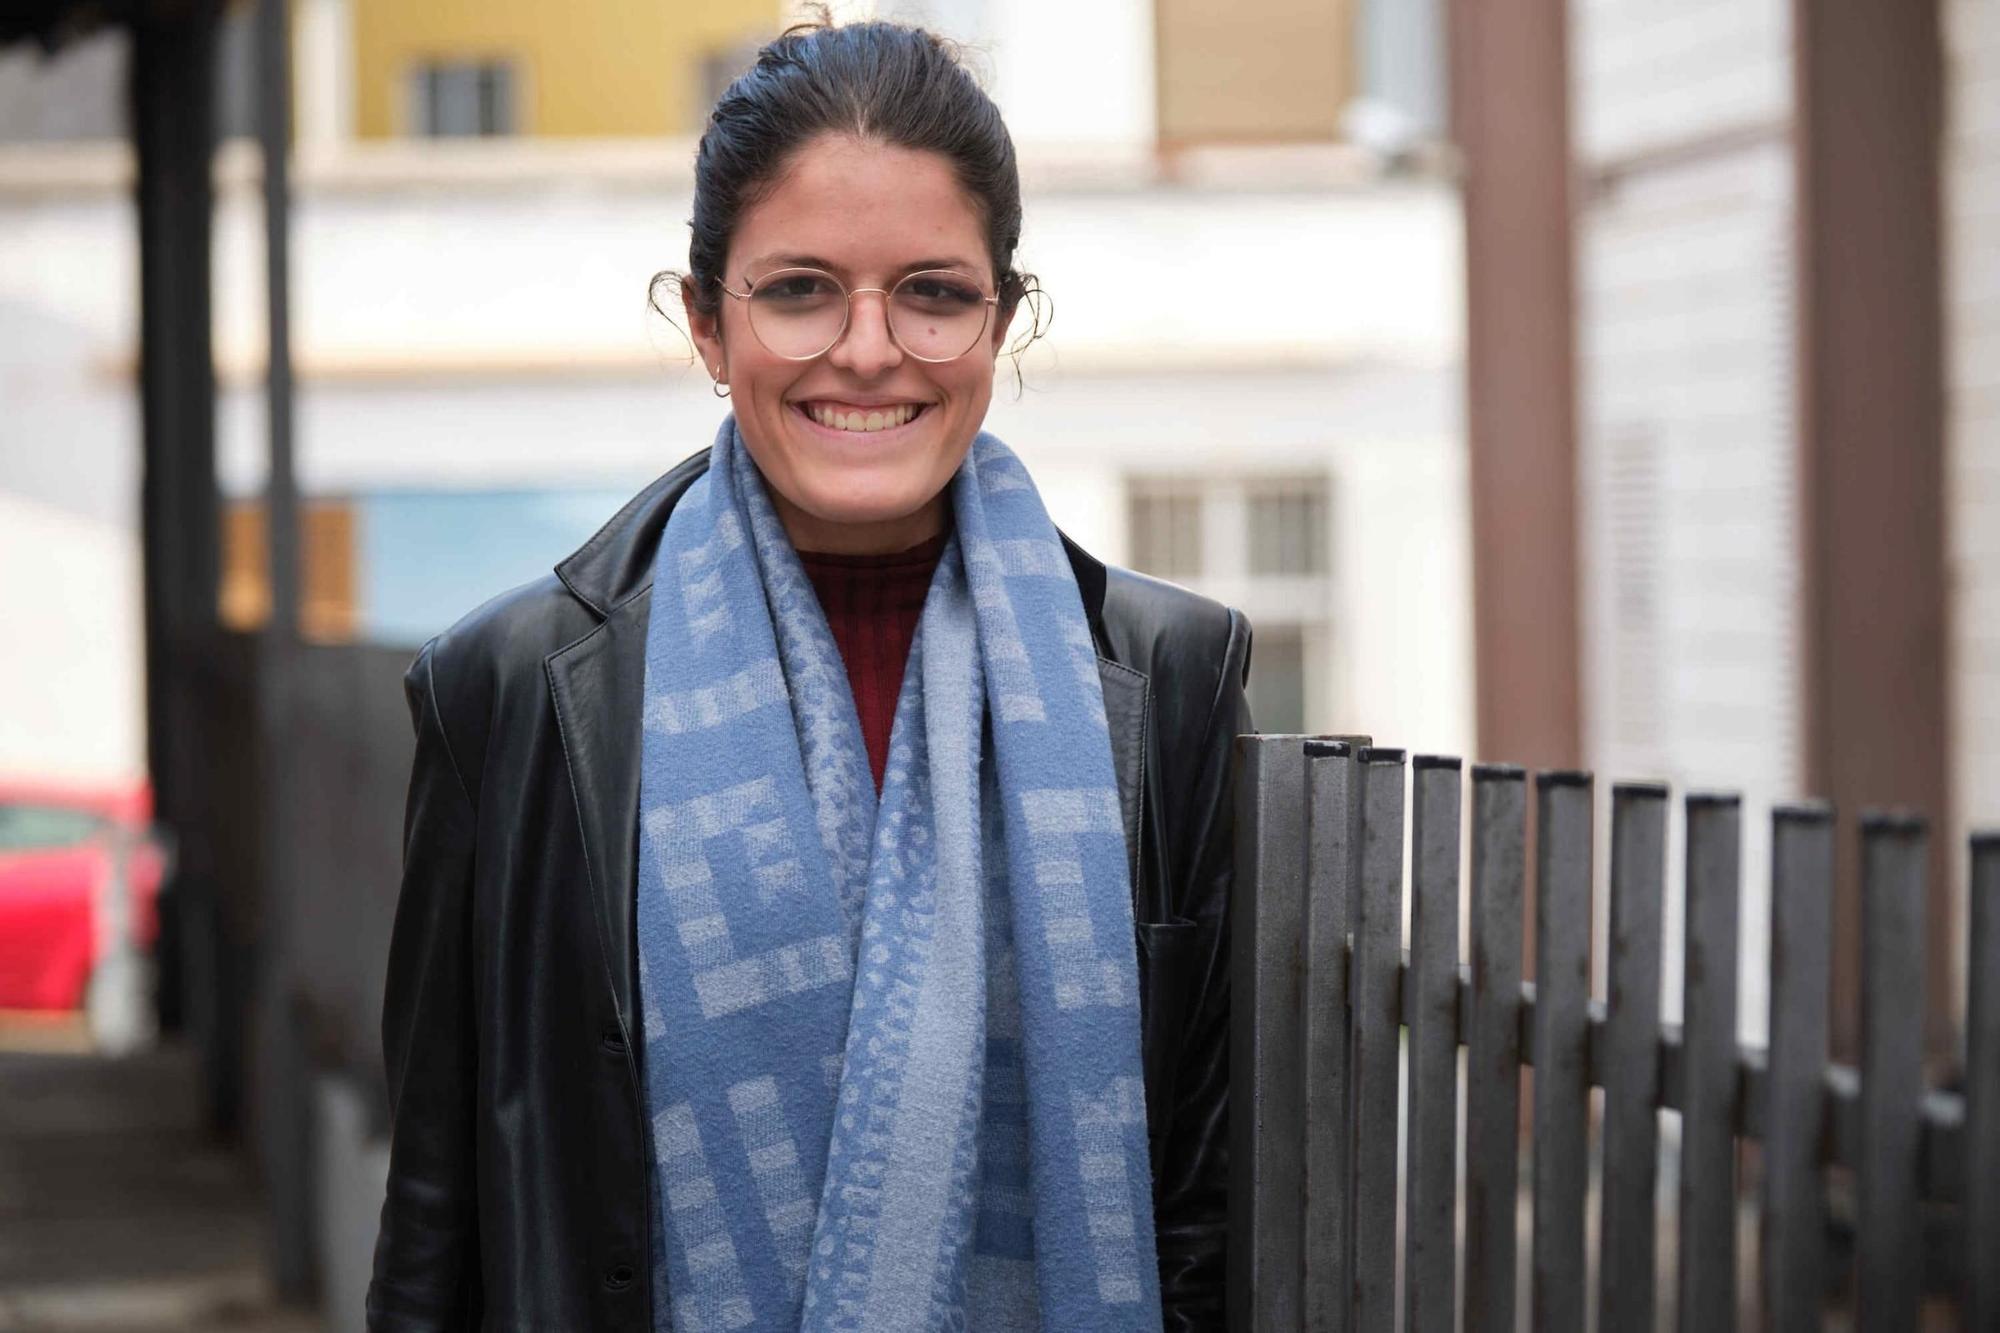 Ines Rodriguez Rivero tiene 19 años, vive en Santa Cruz de Tenerife y estudia Periodismo en su respectiva facultad en la Universidad de la Laguna. Es la hermana mayor de la casa y desde siempre ha tenido los objetivos claros dobre lo que quiere como, comunicar, cantar, escribir e informar de las cosas que suceden.